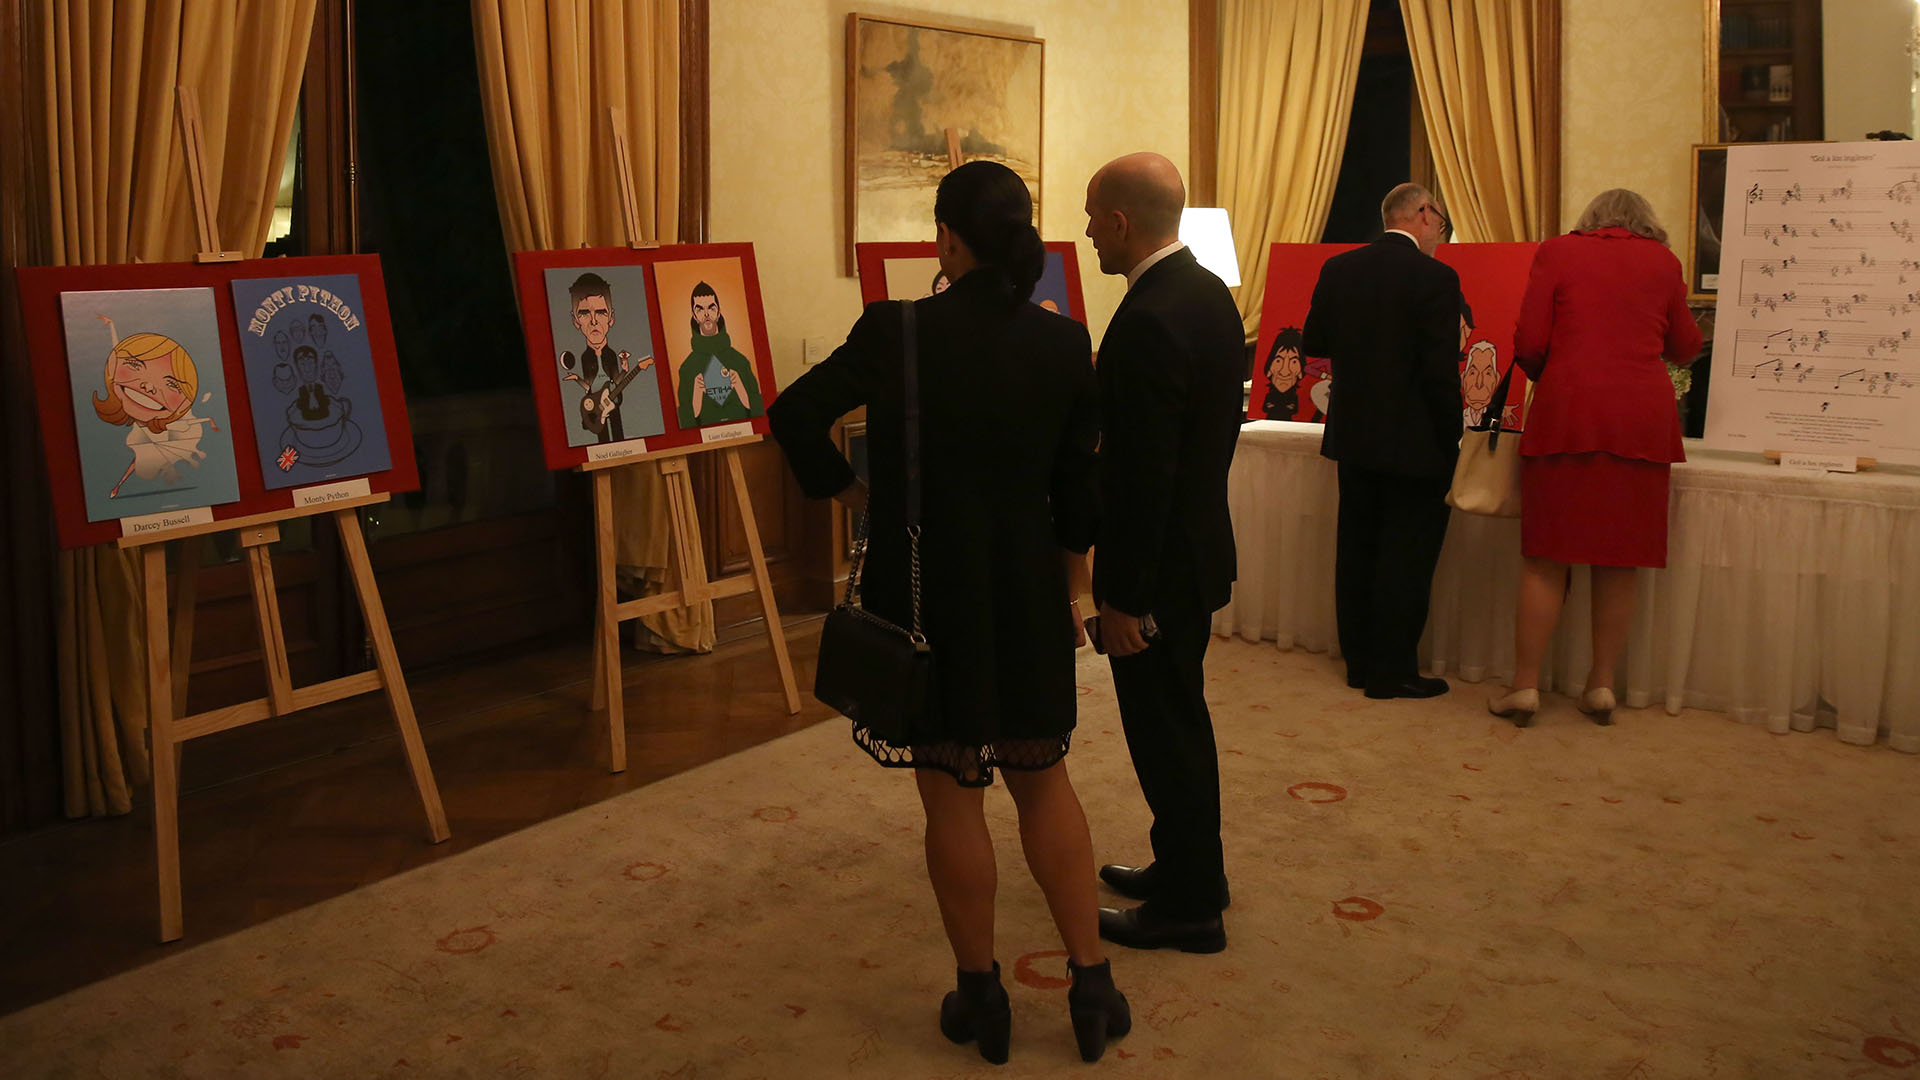 En uno de los salones, se exhibieron dibujos del artista argentino Costhanzo que hablan de la cultura británica, como Sherlock Holmes, Queen o los Monty Python